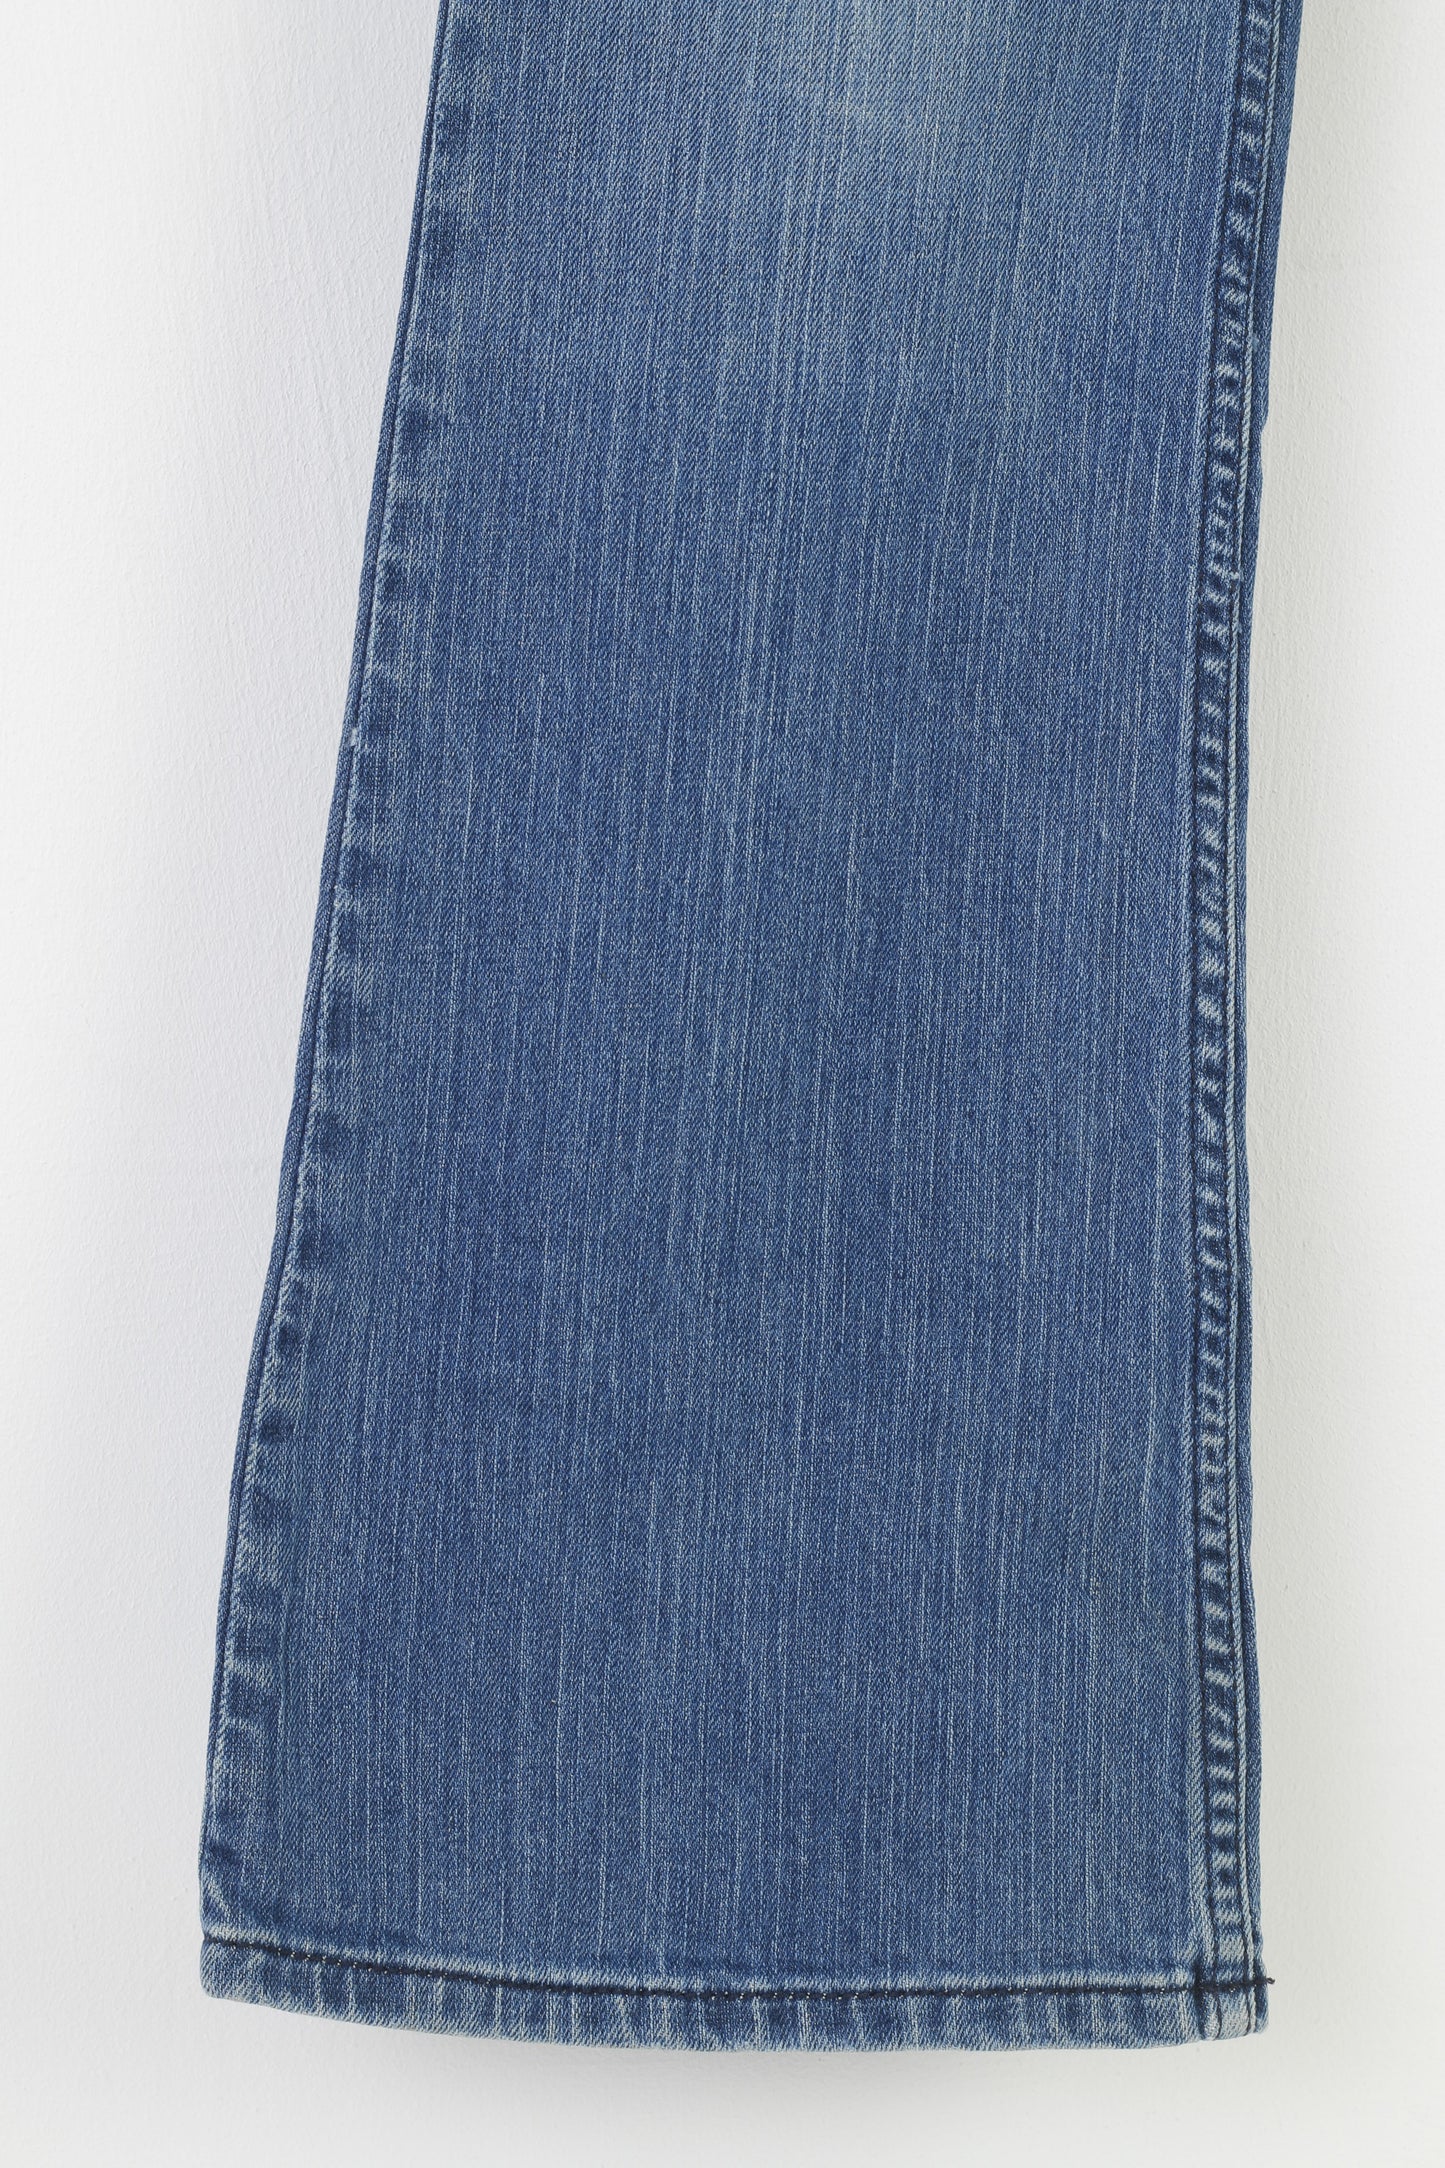 DKNY Men 28 Trousers Blue Cotton Jeans Elastan Low Waist VIntage Pants